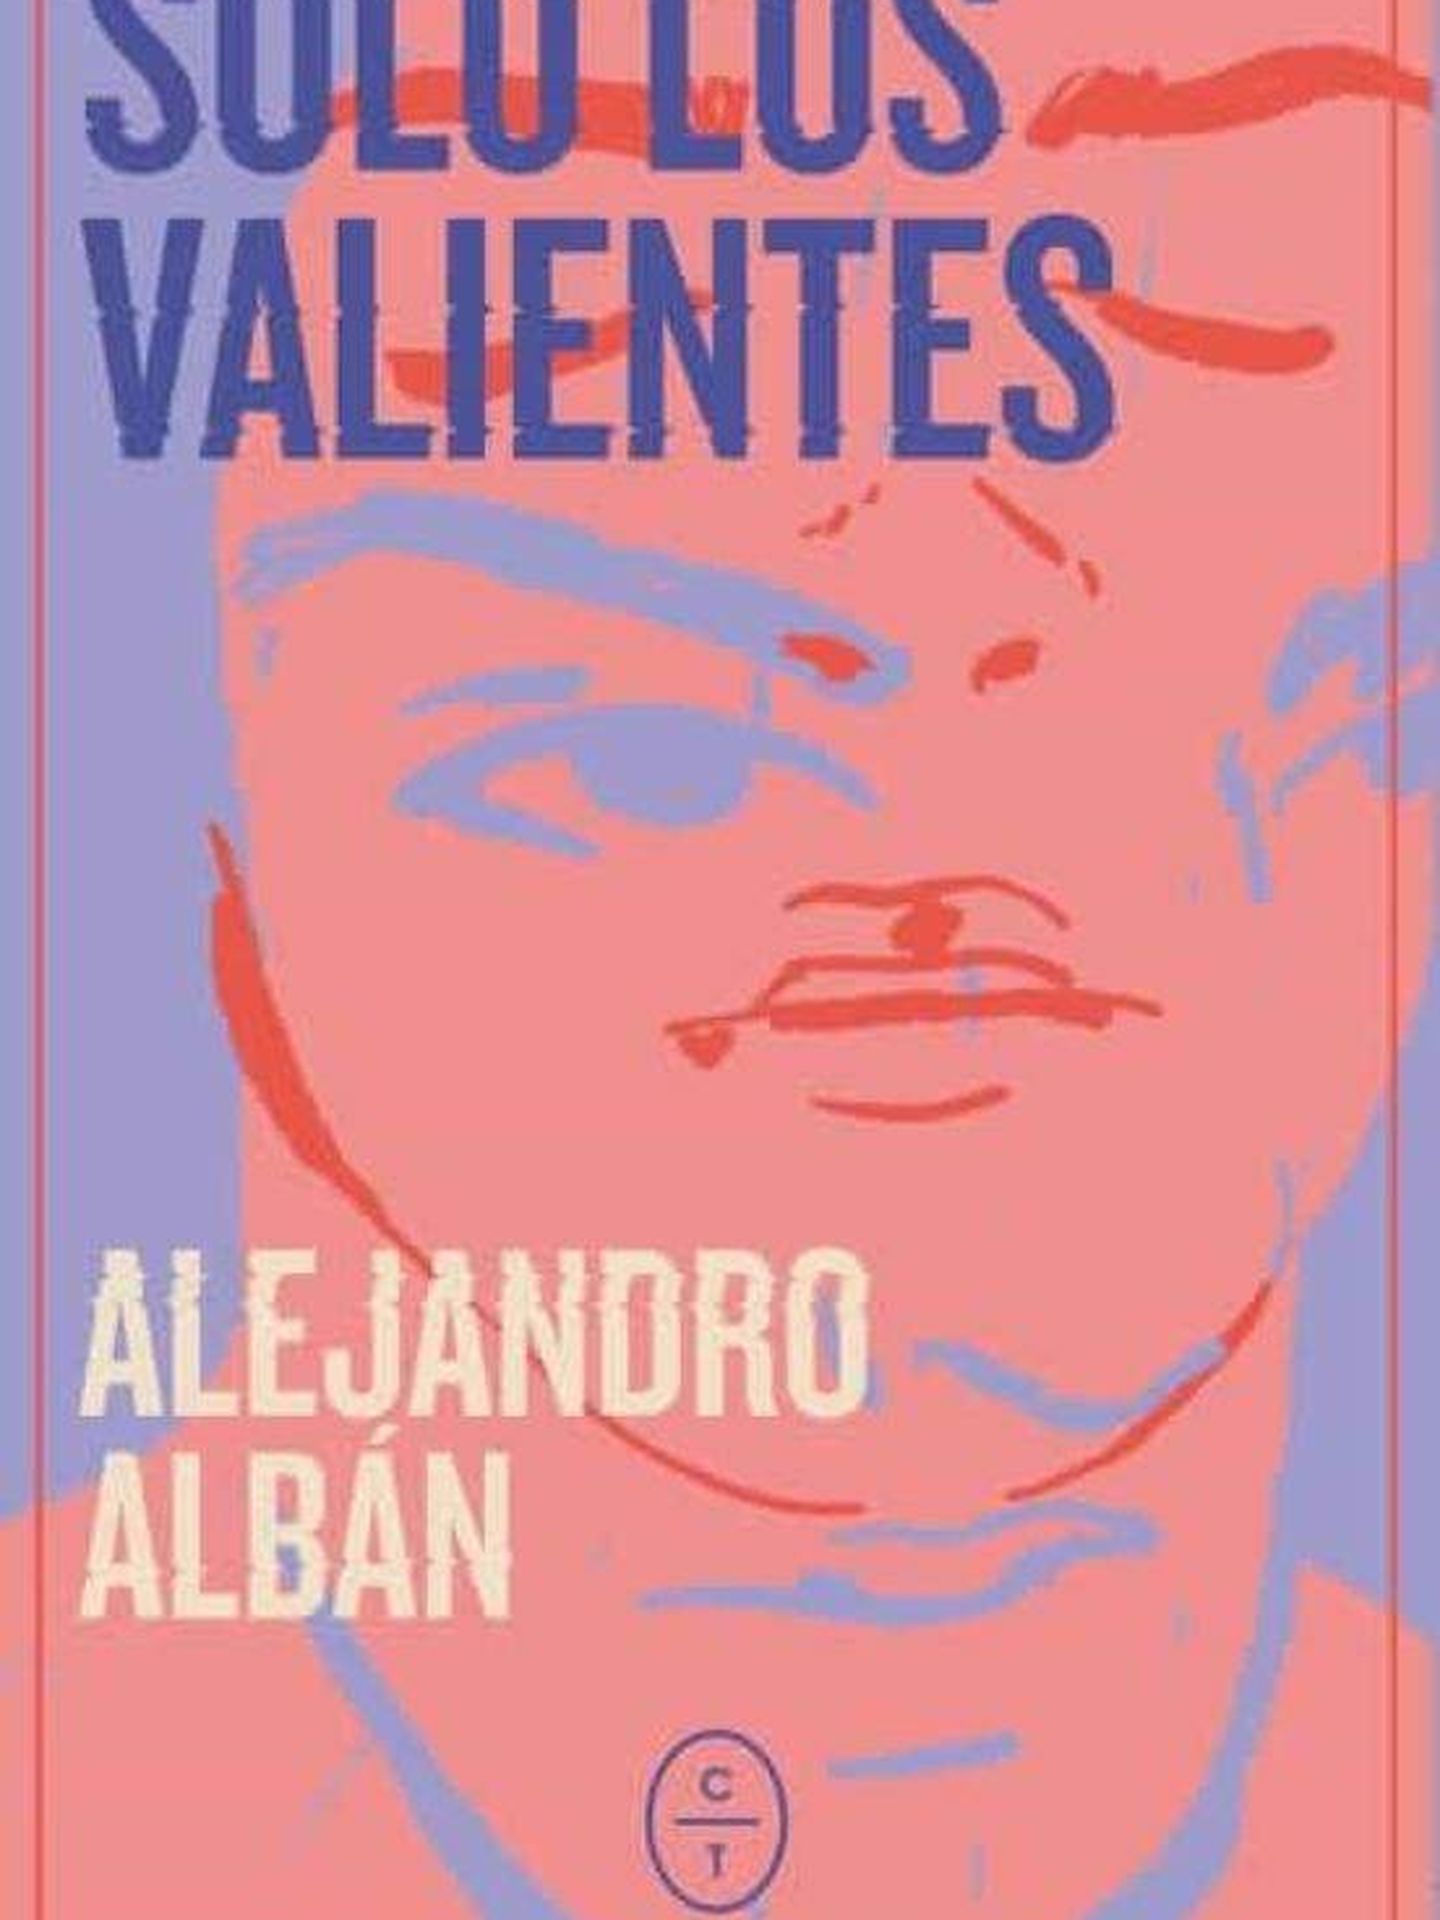 Carátula del libro 'Solo los valientes' de Alejandro Albán.